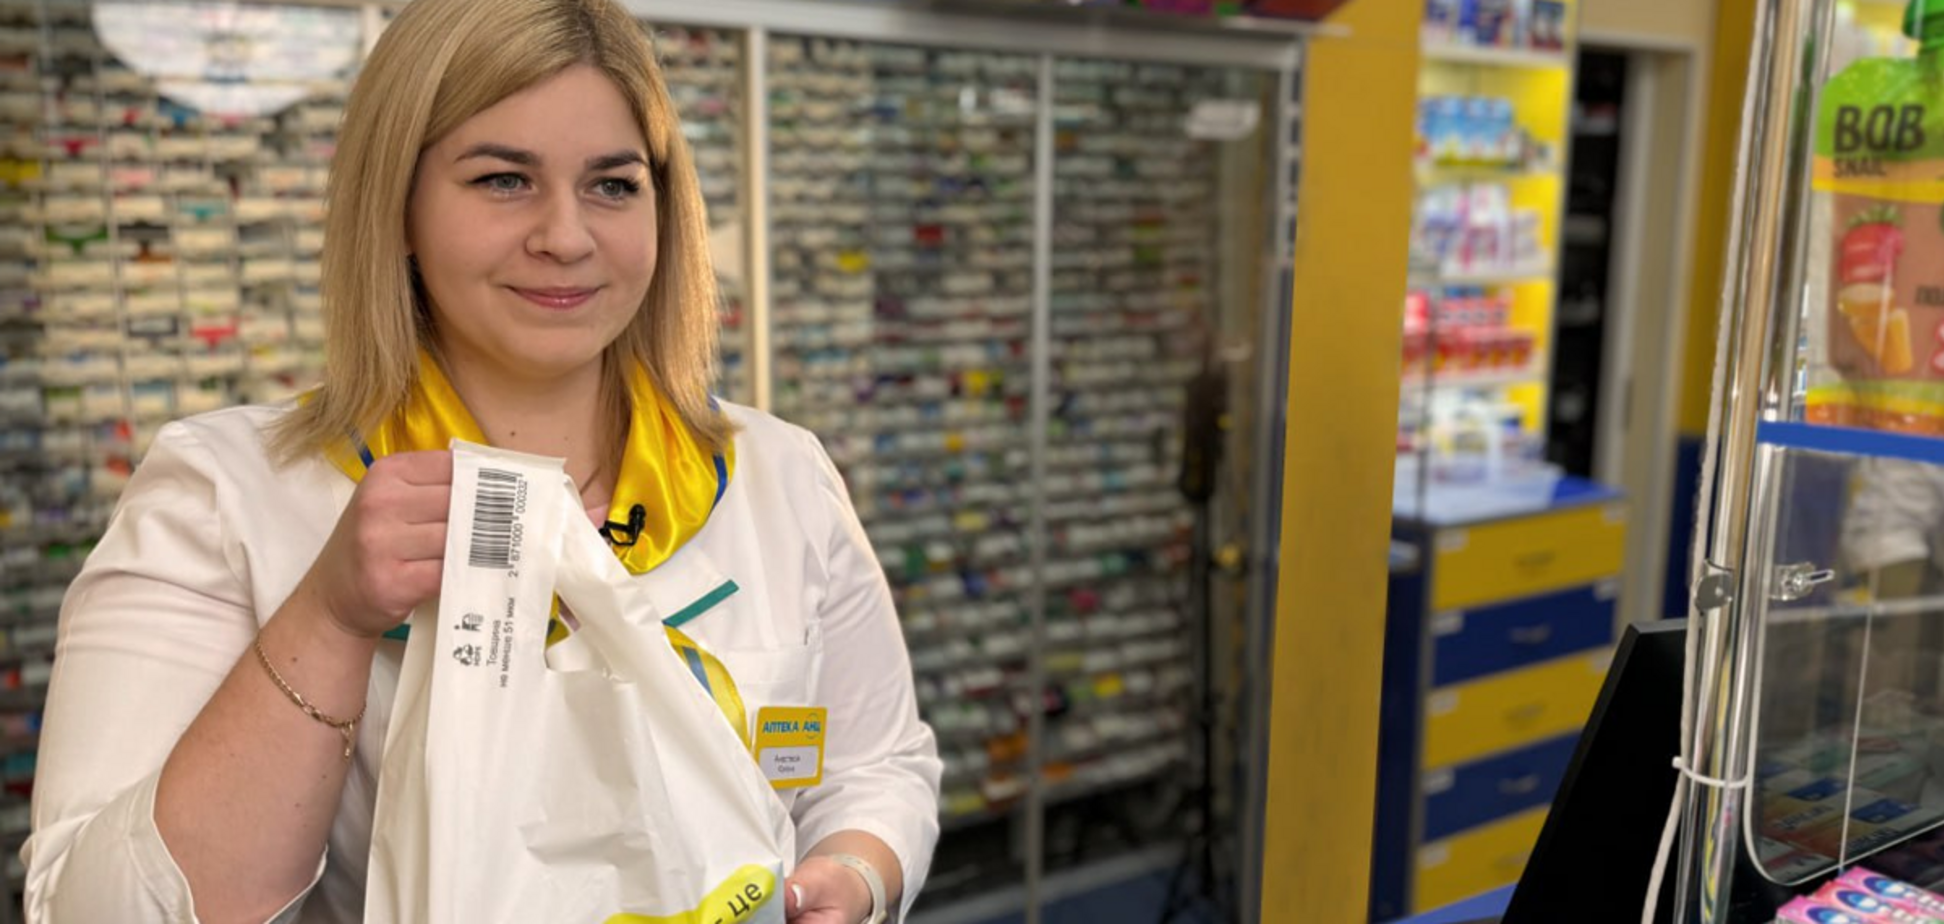 Інноваційний підхід та сприяння кар'єрі: мережа аптек 'АНЦ' увійшла до топу роботодавців України